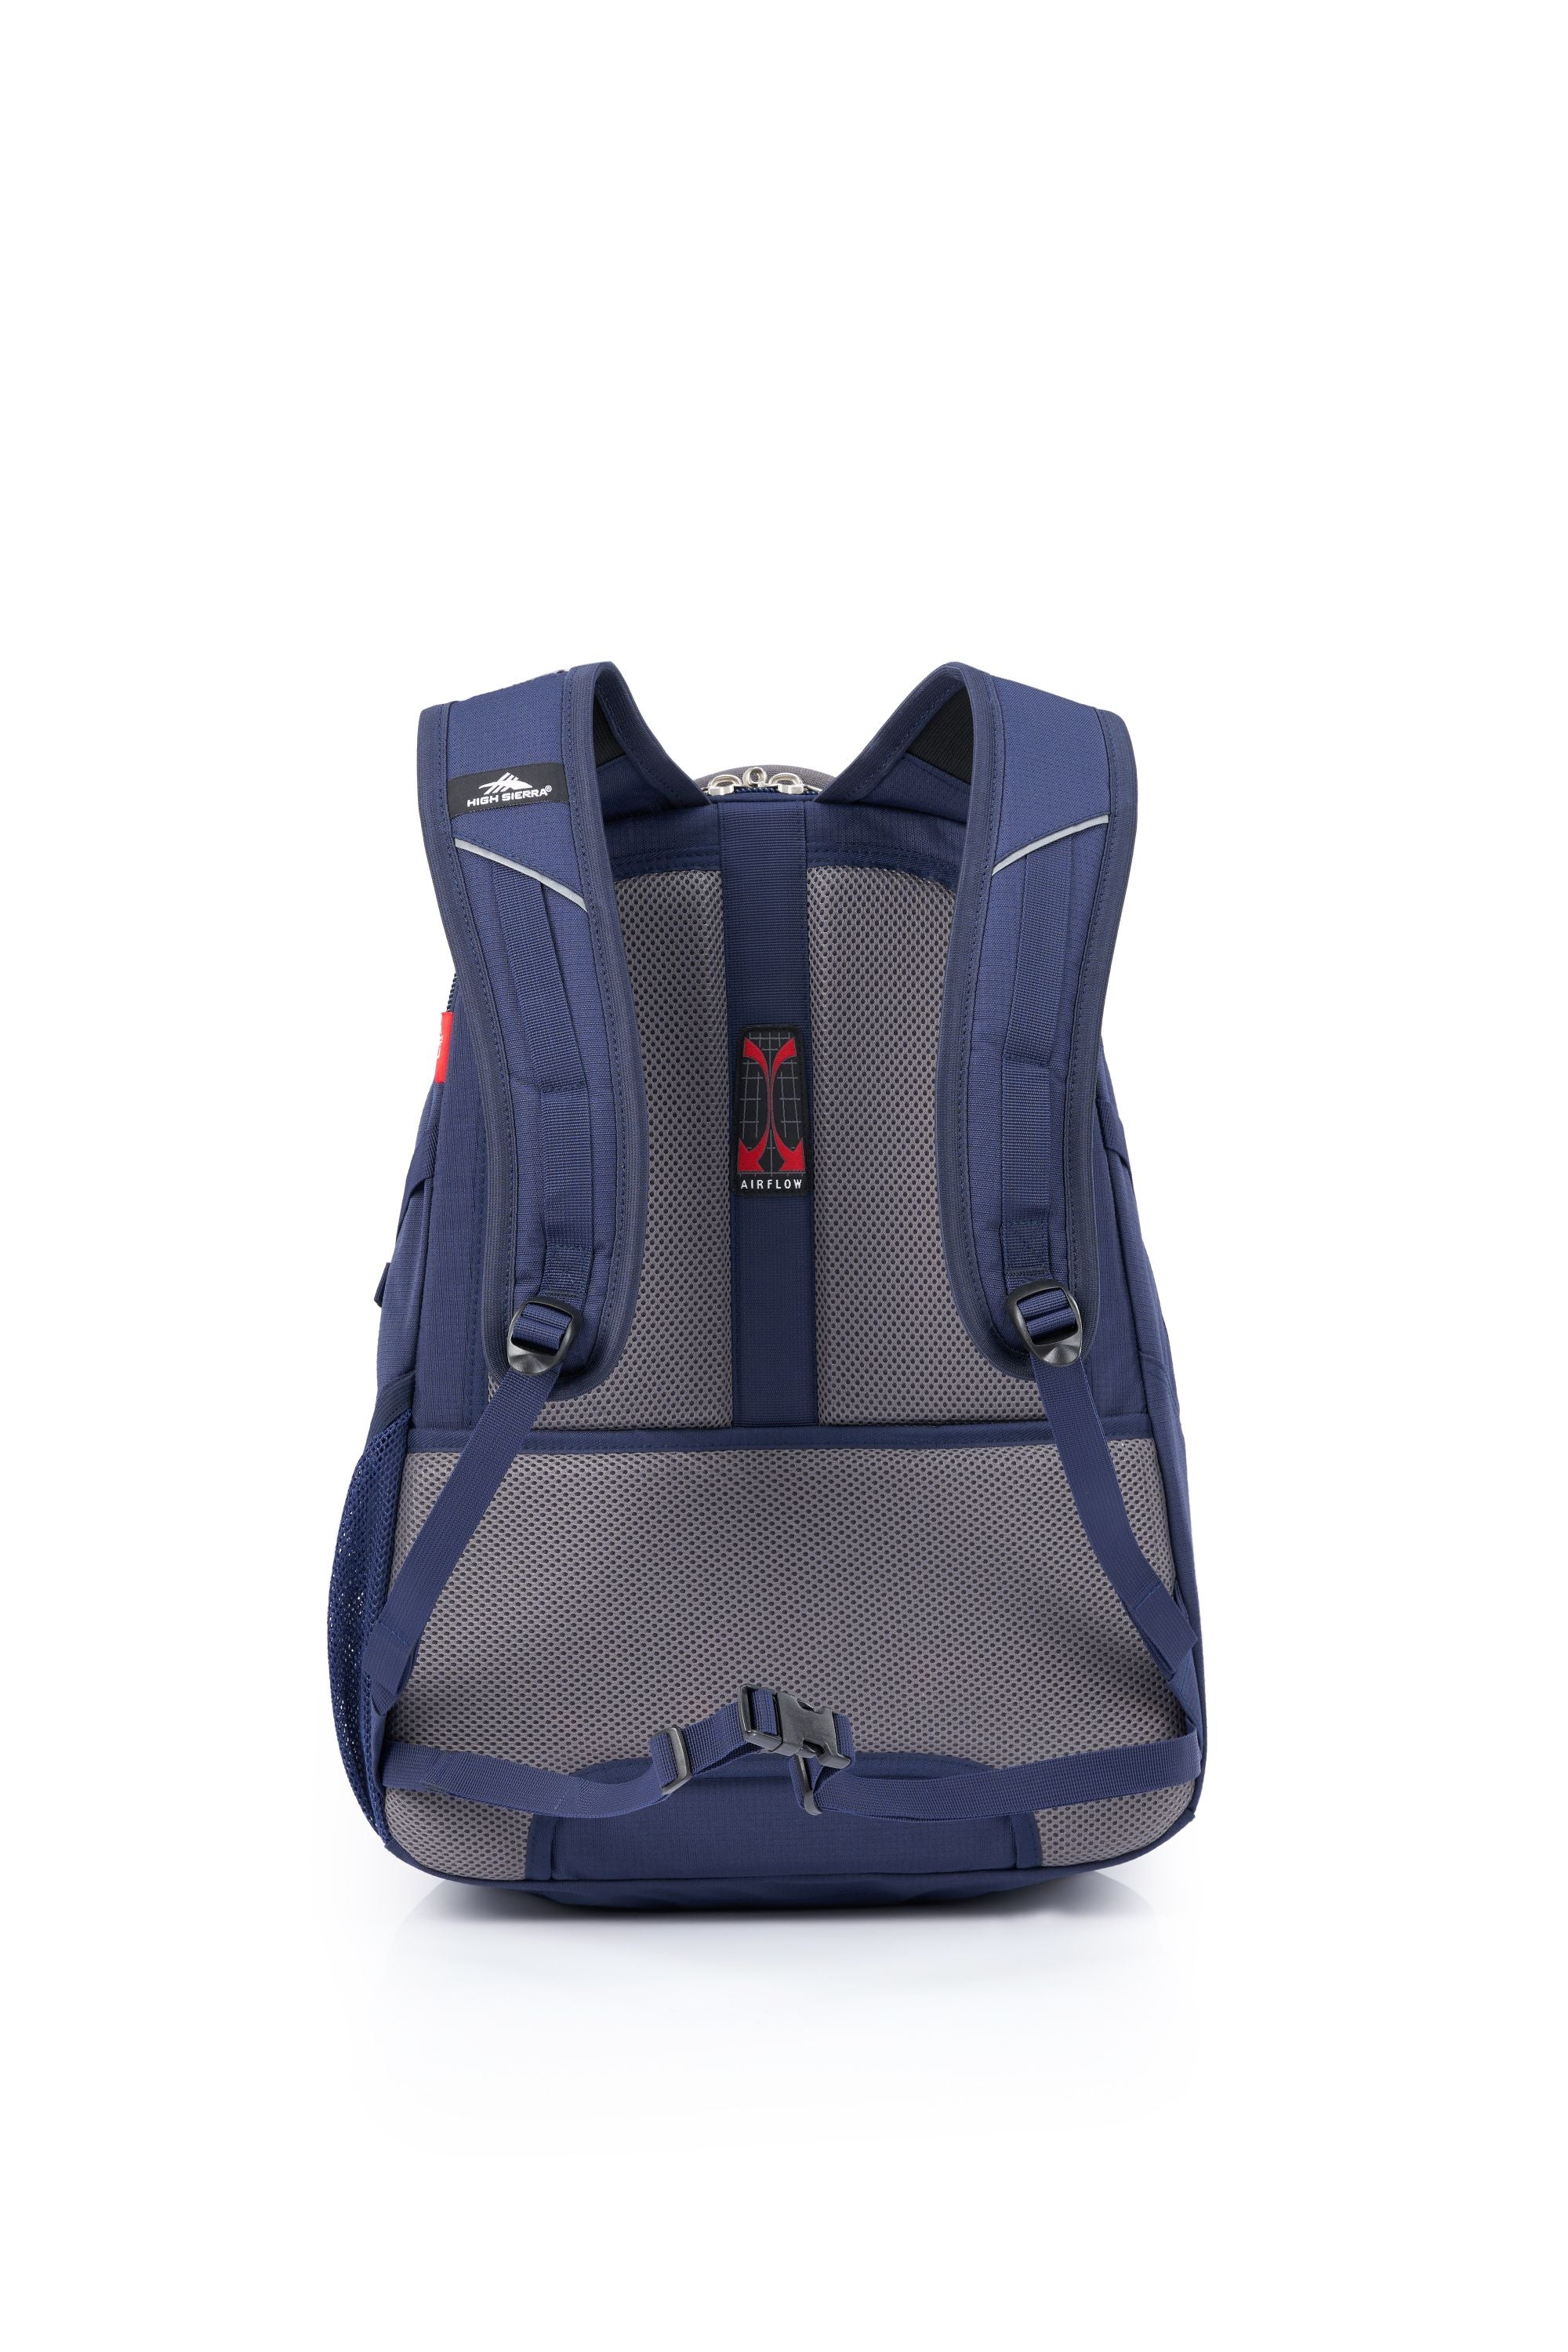 High Sierra - Access 3.0 Eco Backpack - Marine Blue-4